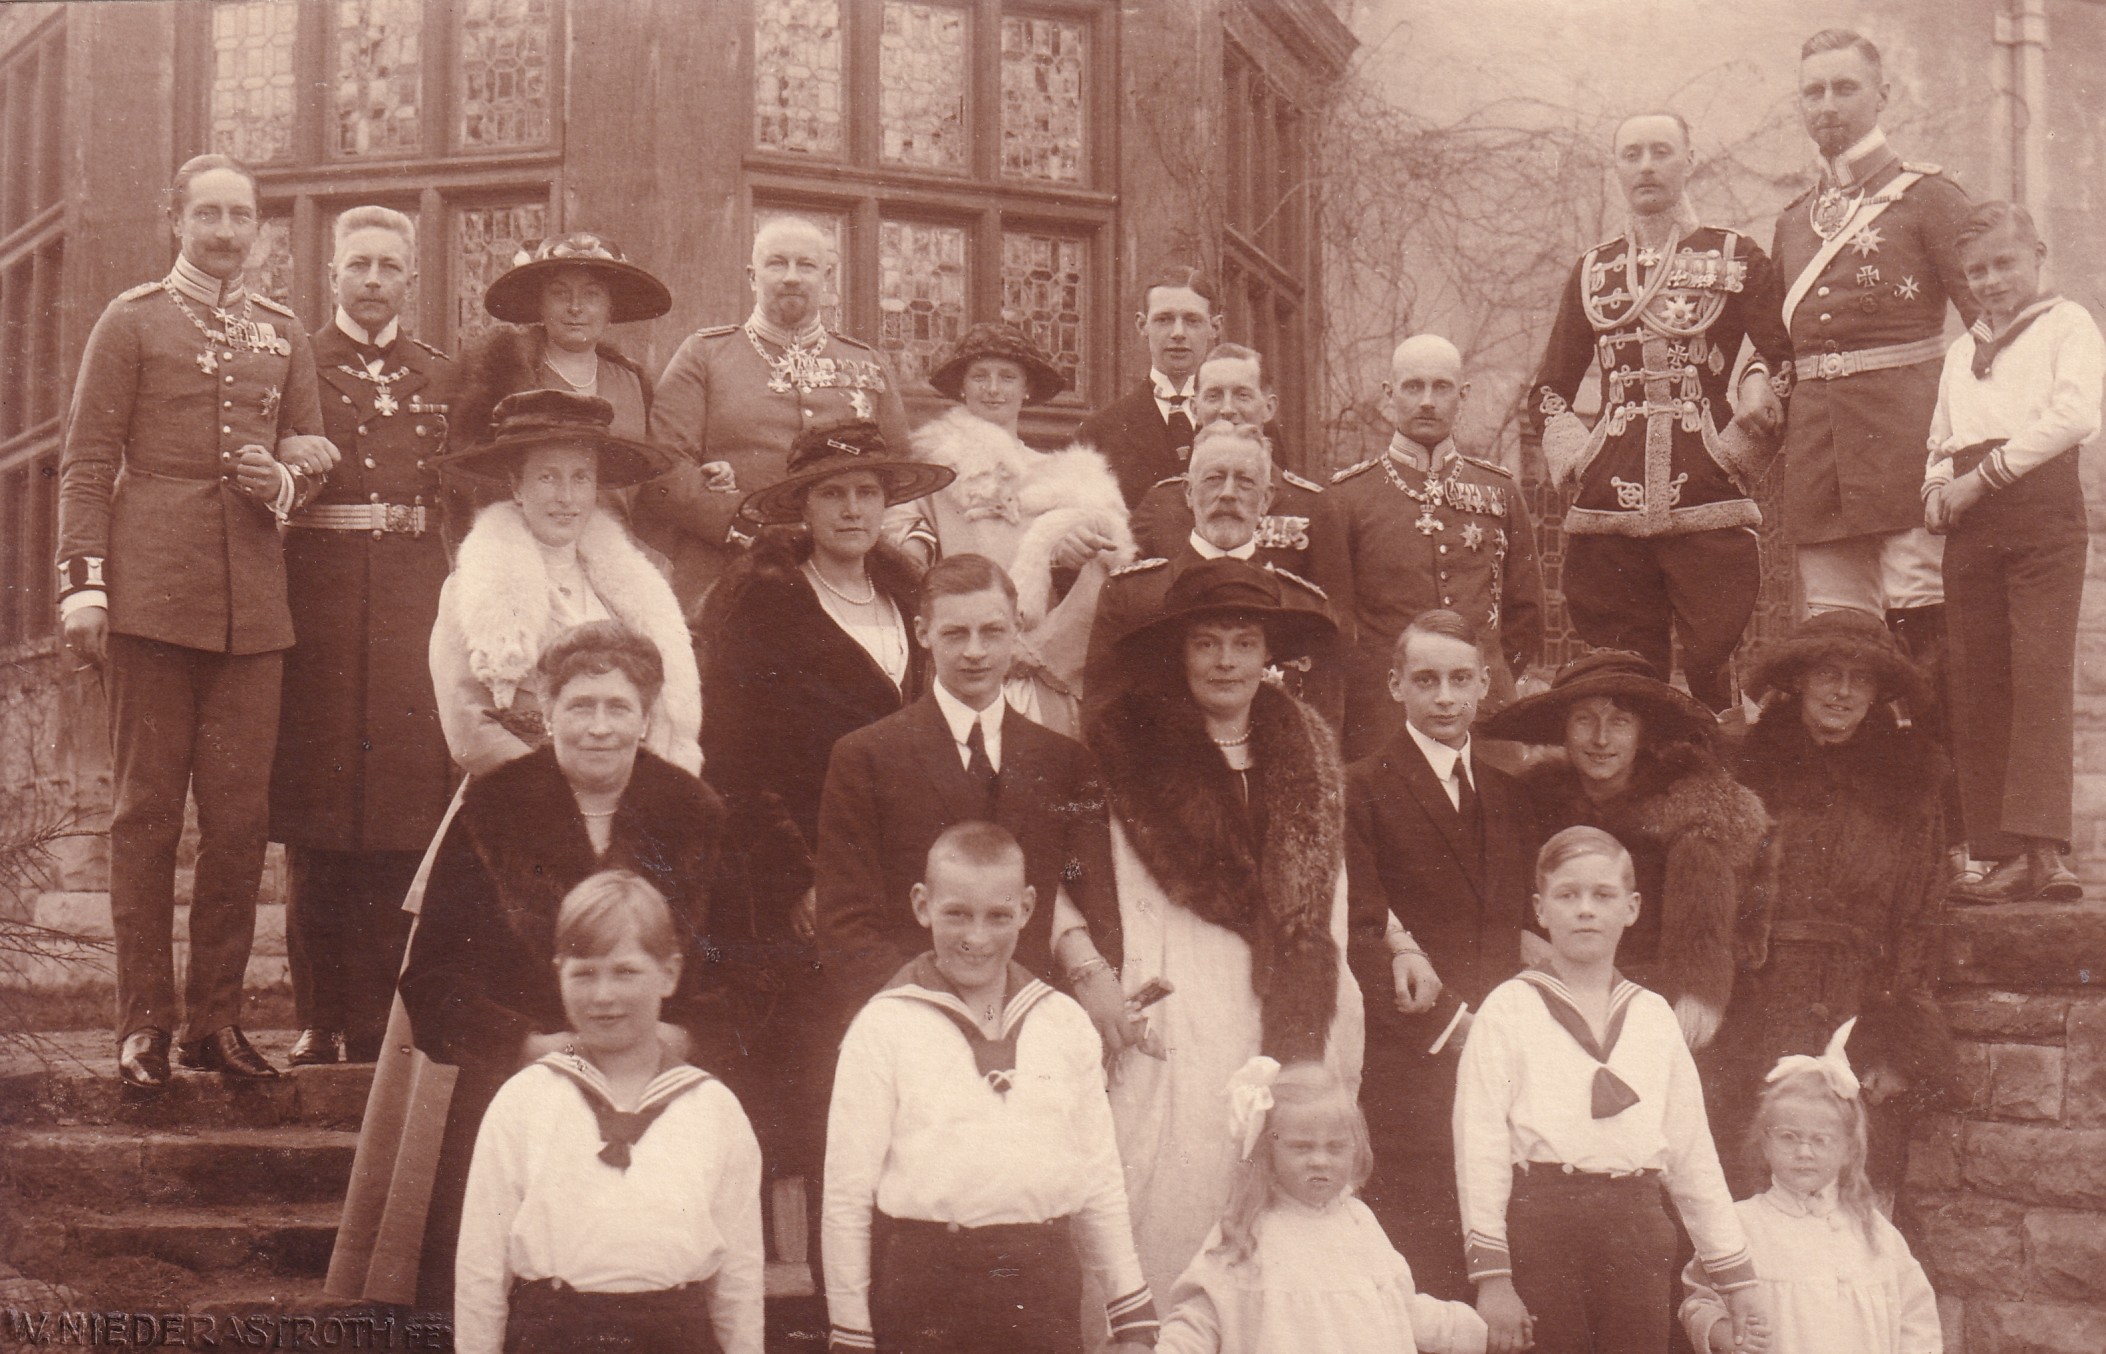 Bildpostkarte mit Gruppenfoto der ehemaligen Kronprinzenfamilie mit Verwandten anlässlich einer Konfirmation, 1922 (Schloß Wernigerode GmbH RR-F)